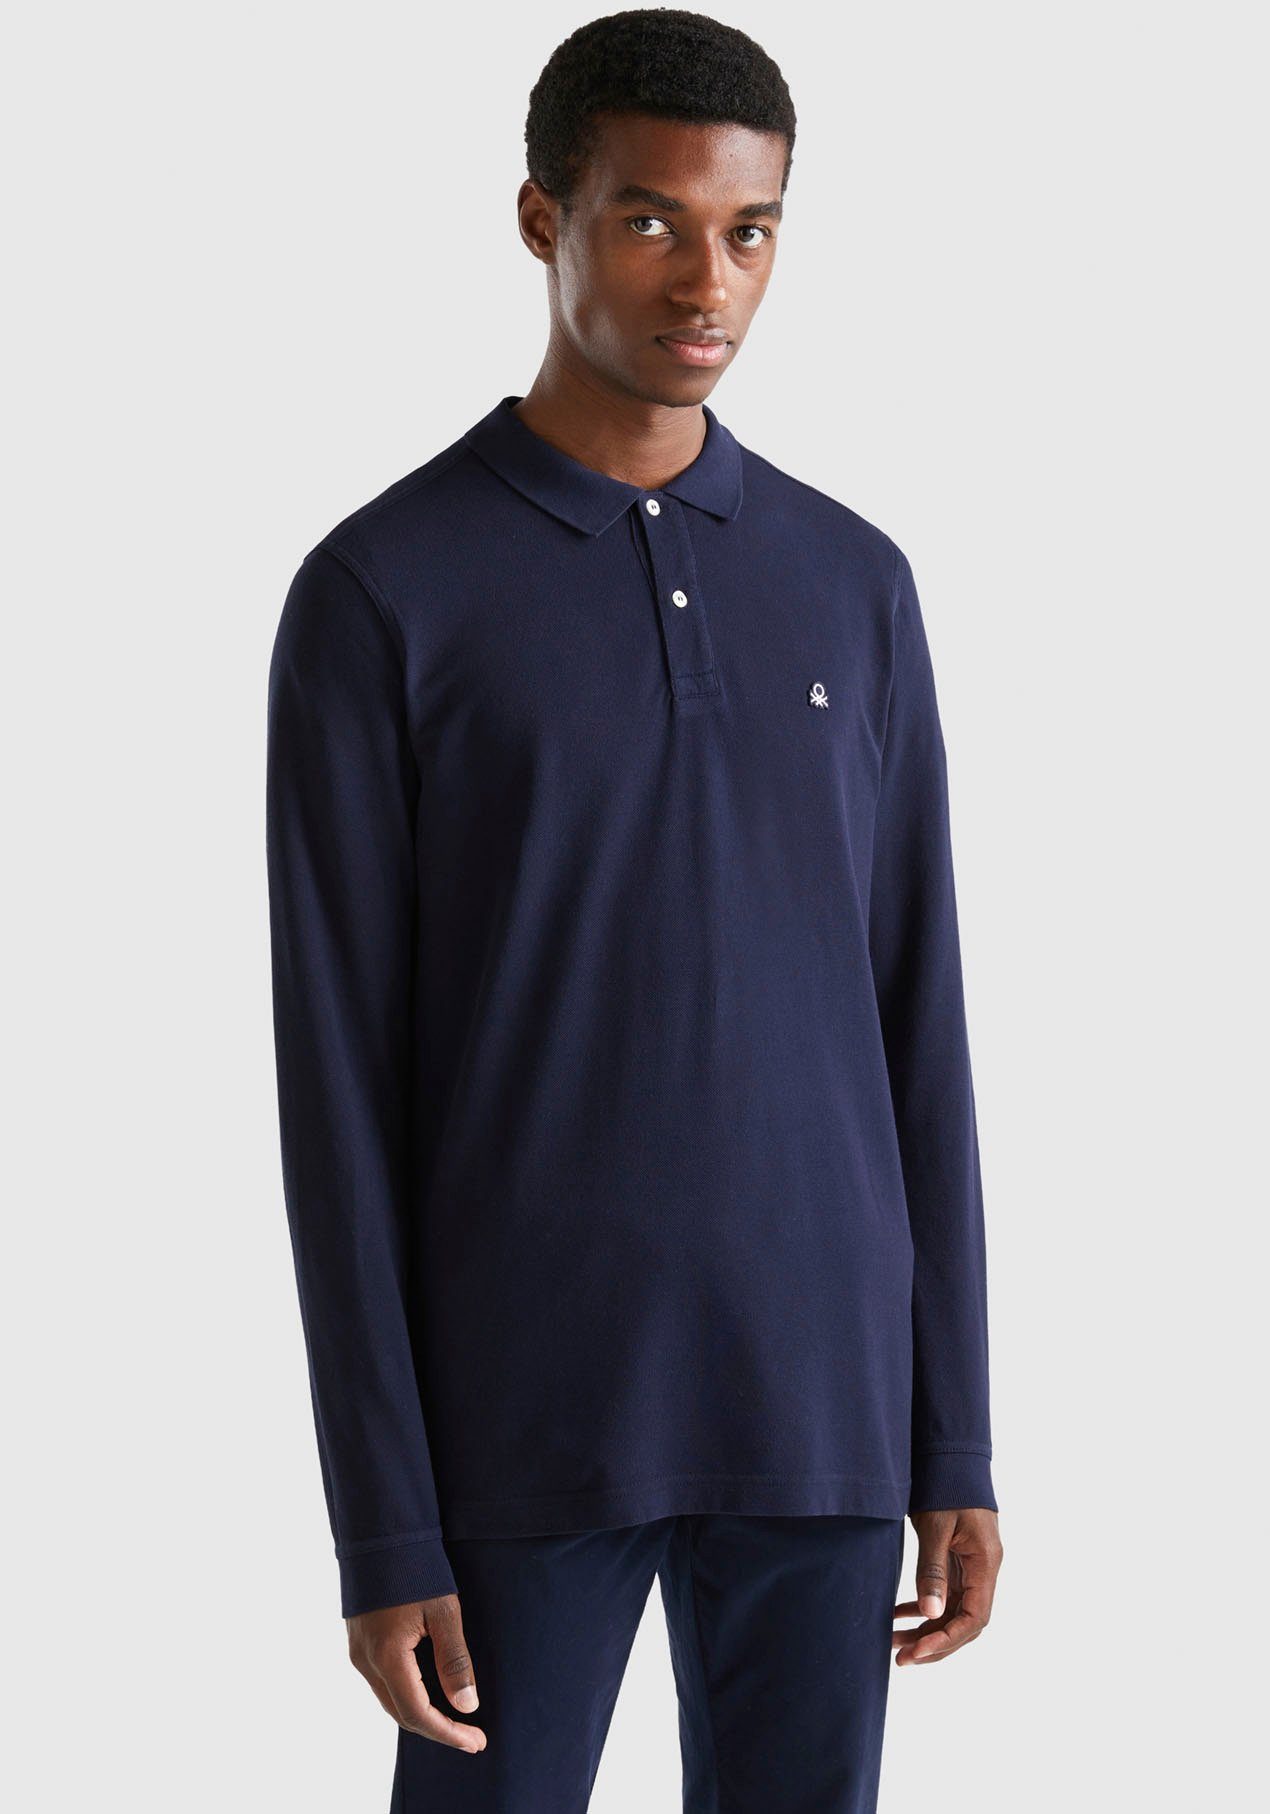 United Colors of Benetton Langarm-Poloshirt mit seitlichen, kleinen Schlitzen blau